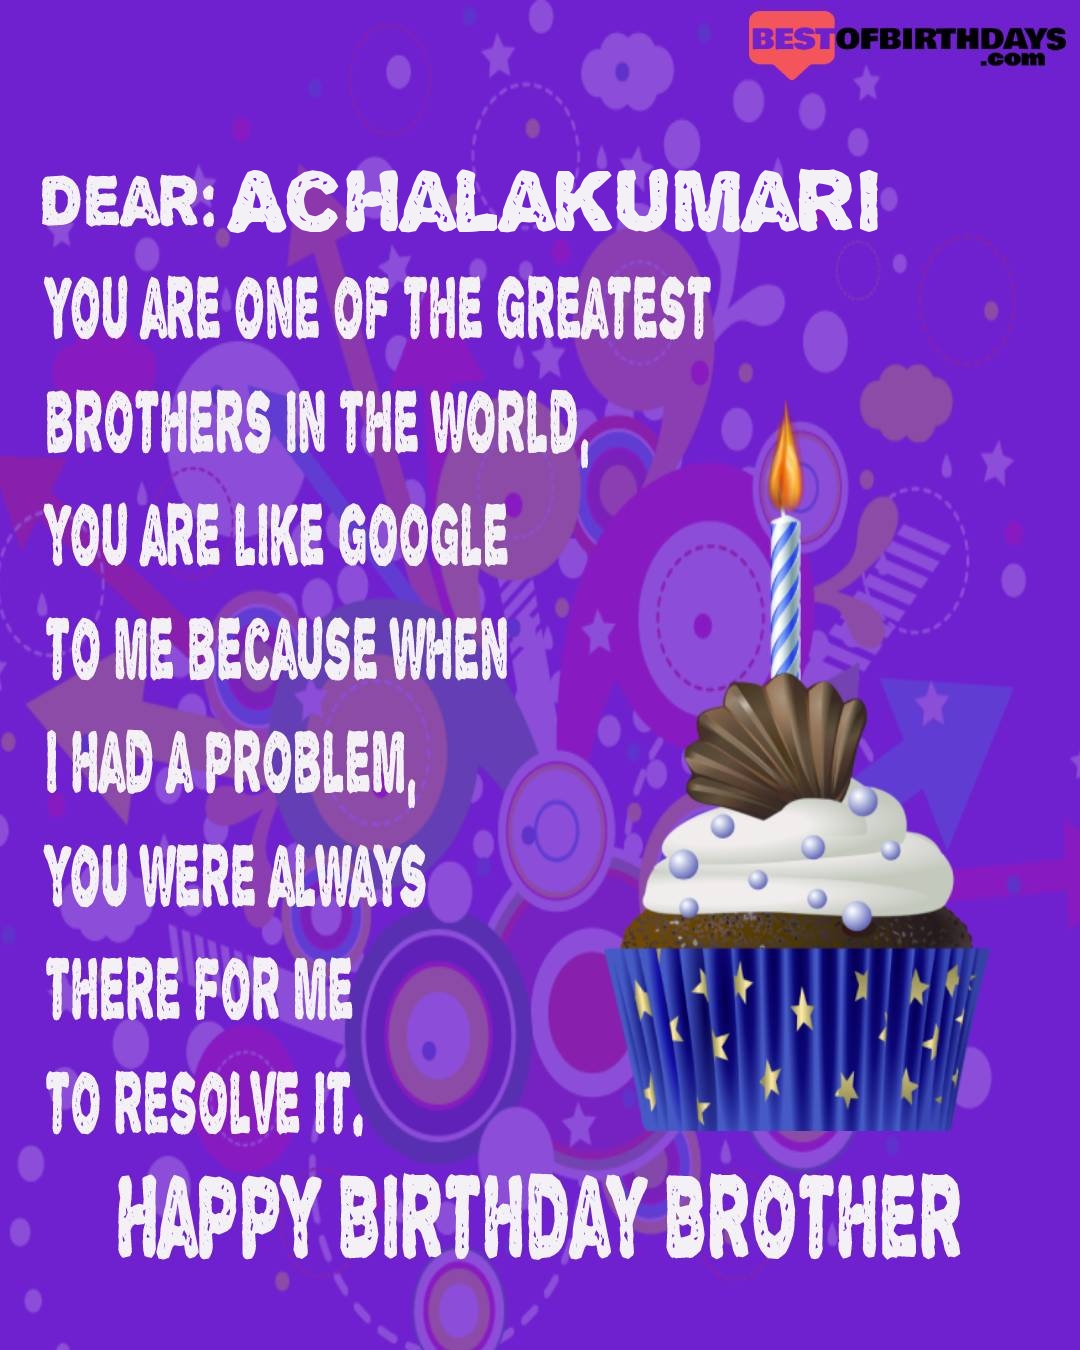 Happy birthday achalakumari bhai brother bro